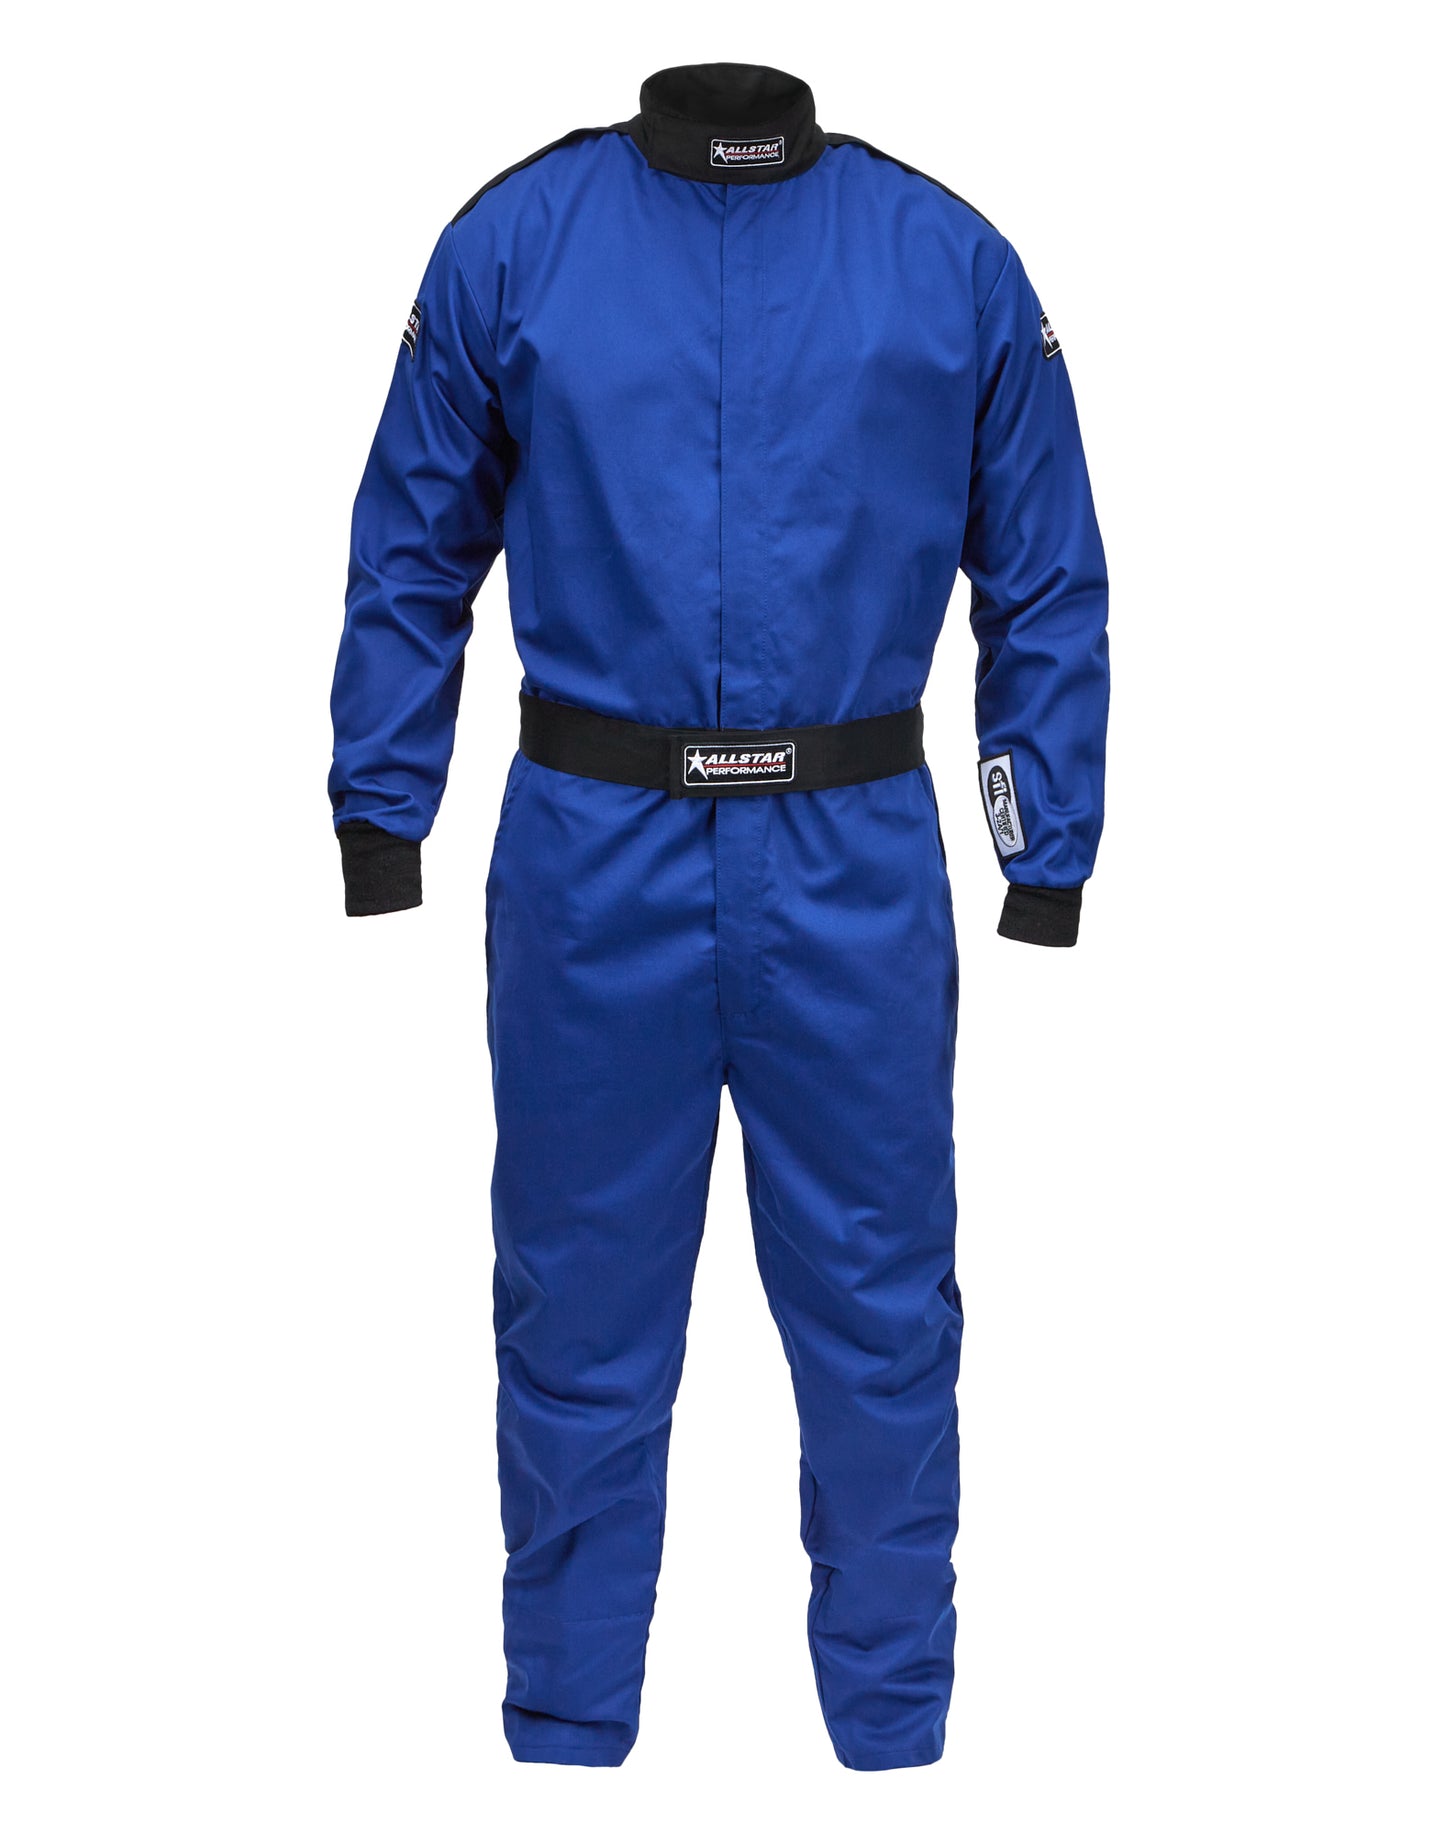 Racing Suit SFI 3.2A/1 S/L Blue XX-Large